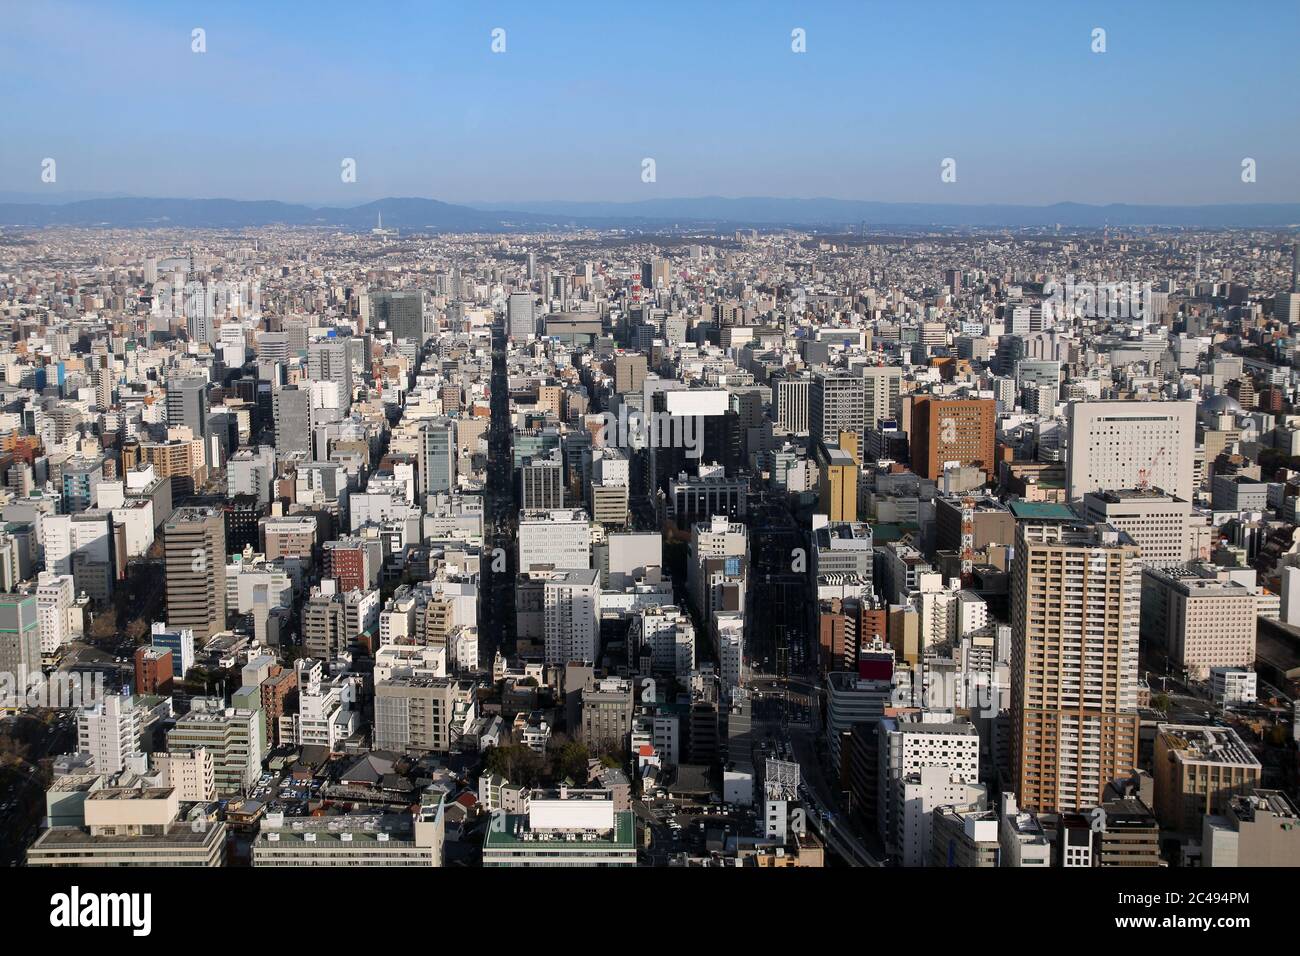 Luftaufnahme der Stadt Nagoya in Japan vom Midland Square Tower aus gesehen. Stockfoto